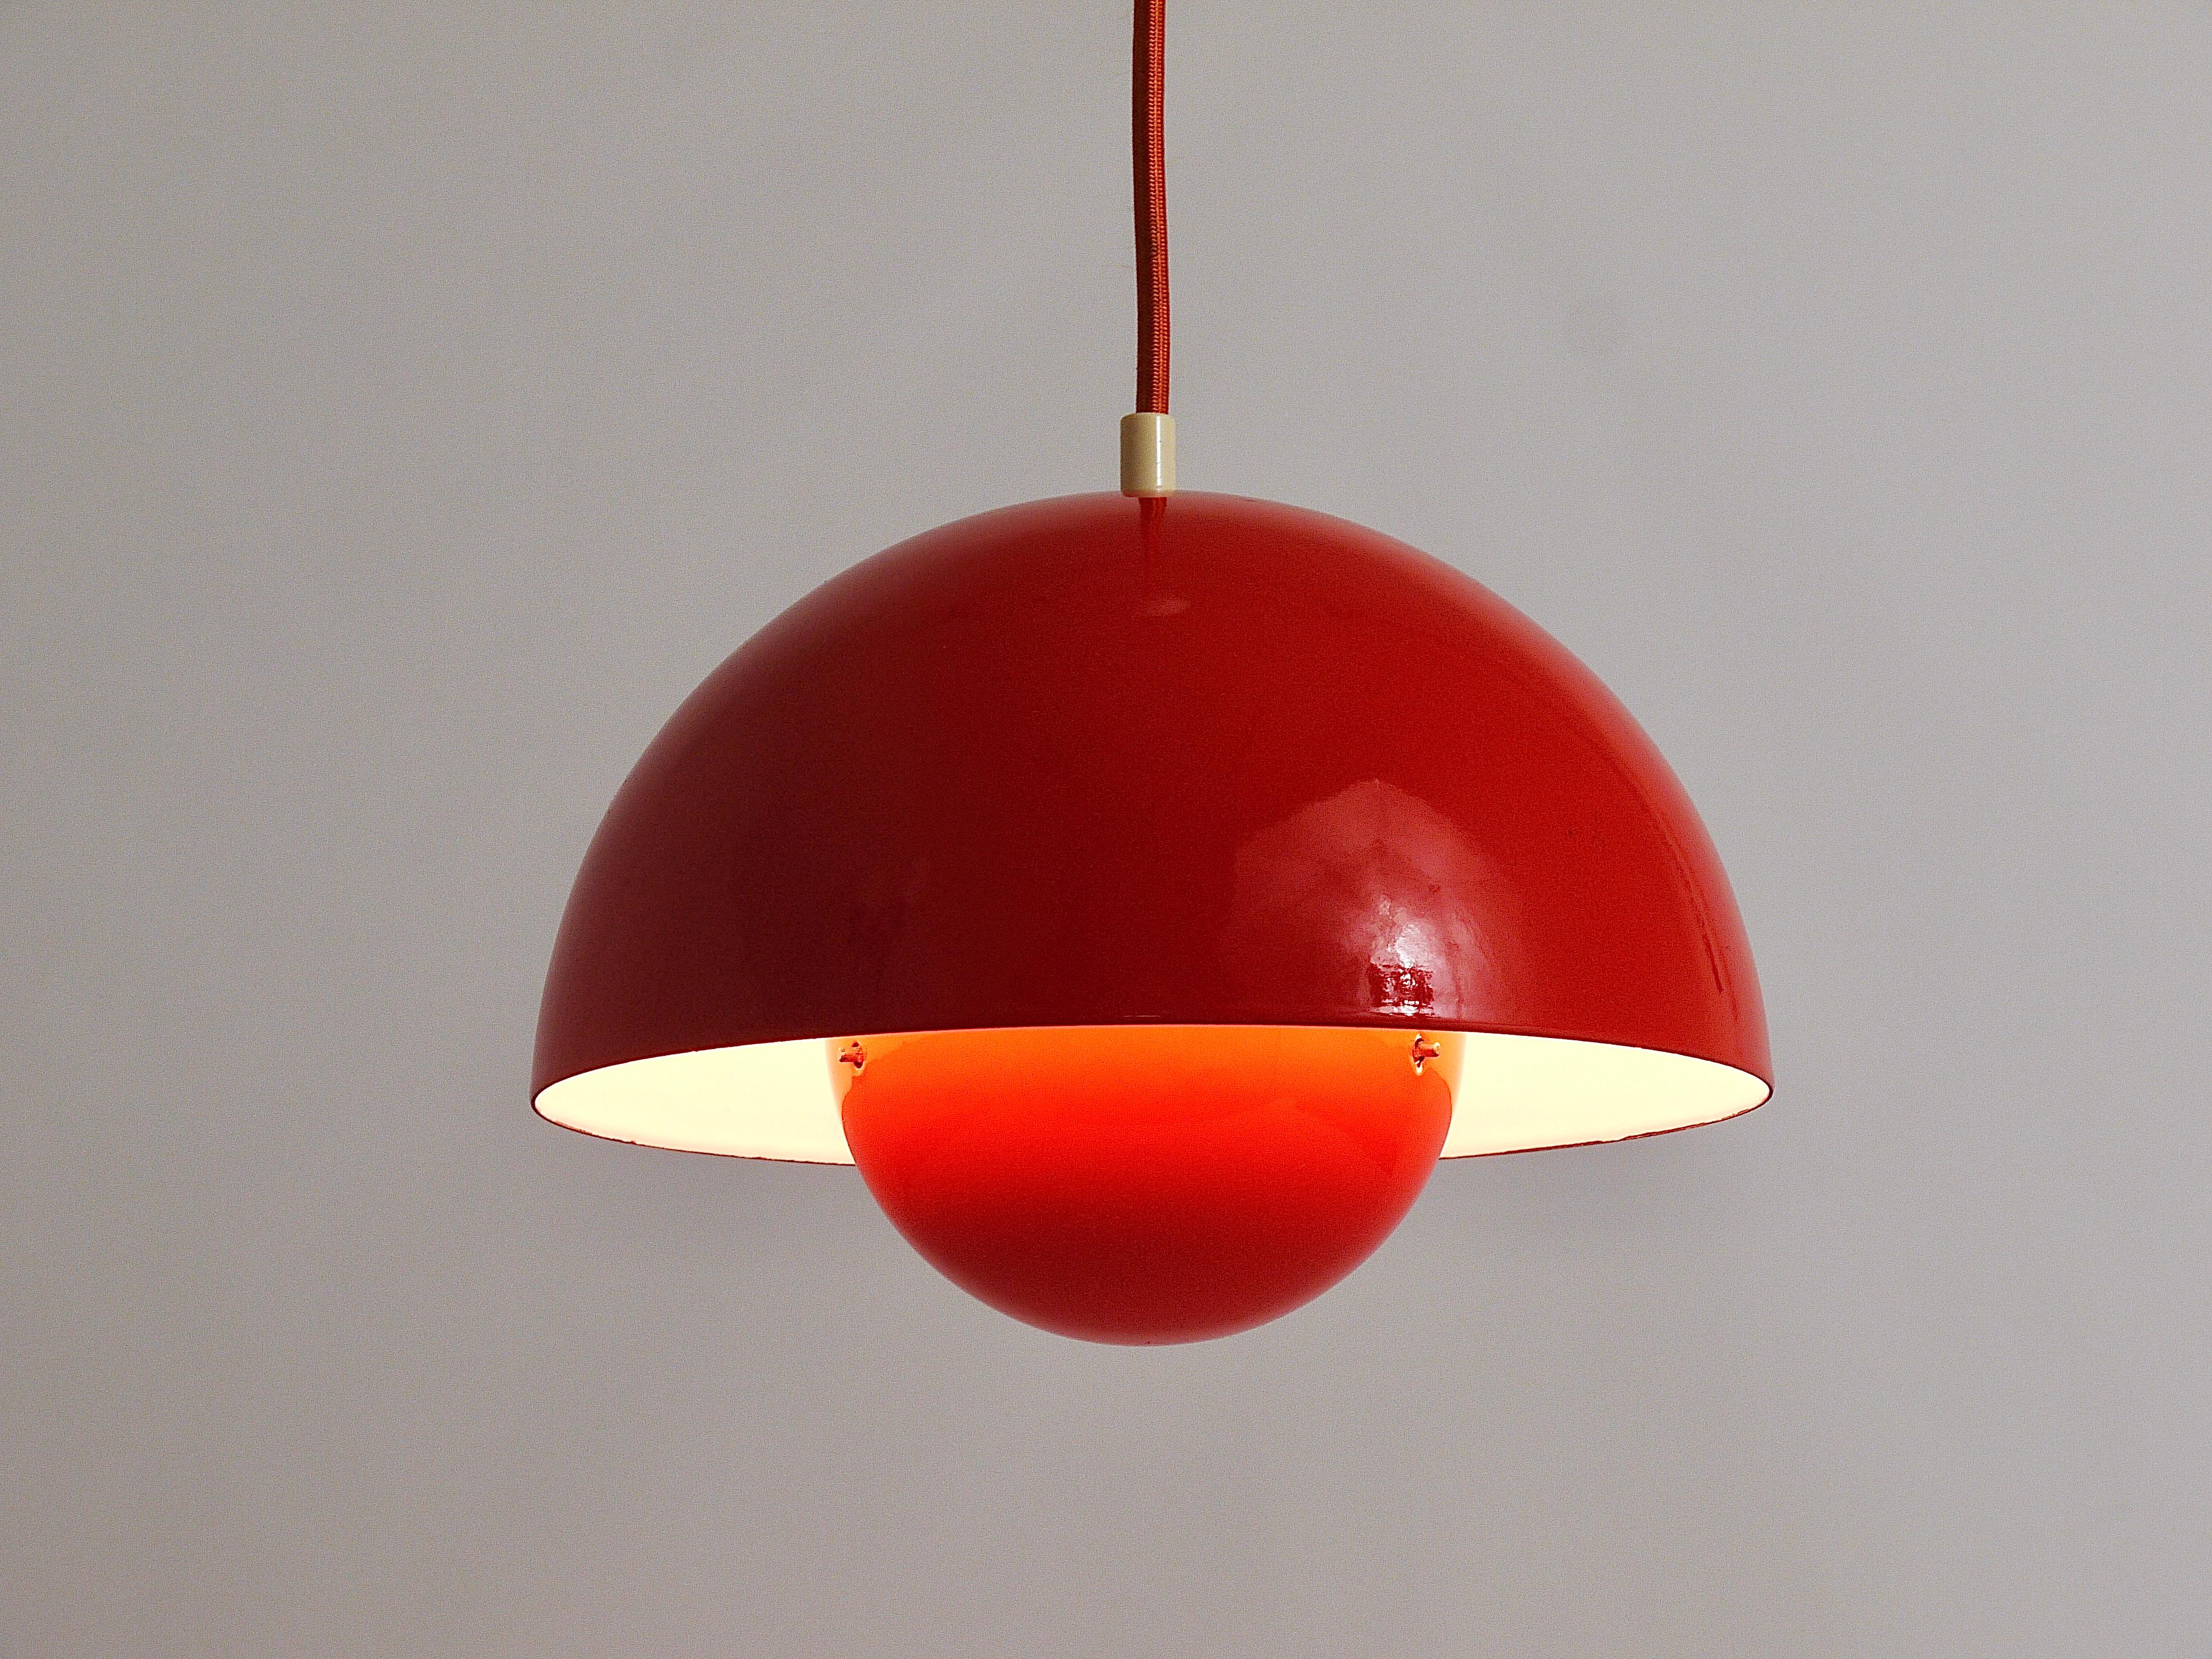 Eine ikonische orangefarbene Blumentopf-Pendelleuchte, 1969 von Verner Panton für Louis Pulsen, Dänemark, entworfen. Eine einfache, aber schöne Deckenleuchte, bestehend aus zwei emaillierten halbkugelförmigen Lampenschirmen, die sich